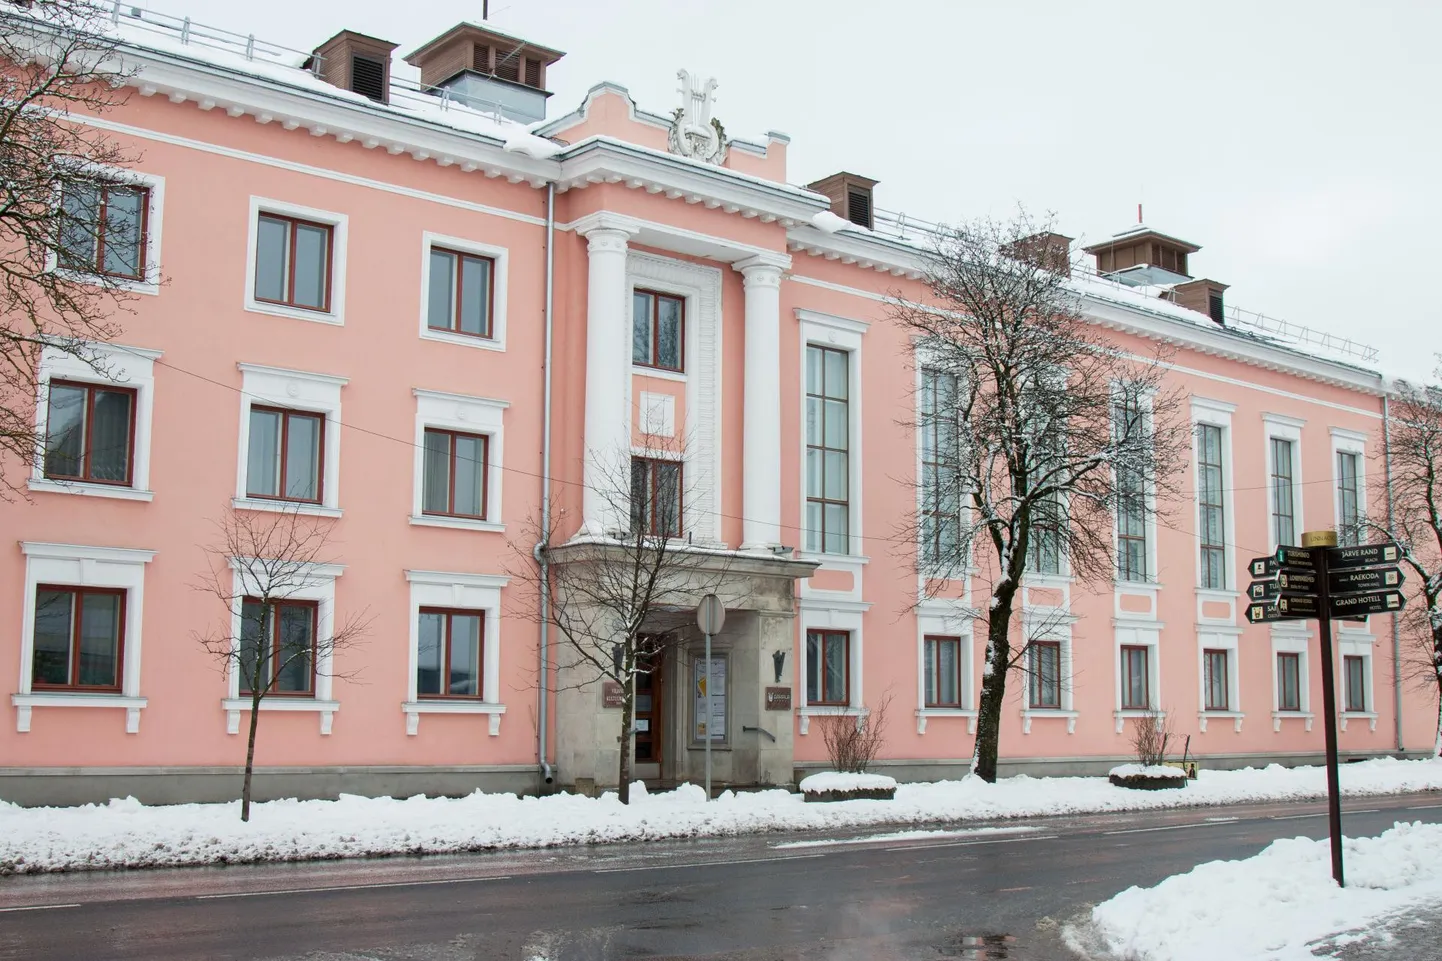 Väärikate ülikooli loengud toimuvad üks kord kuus teisipäeviti Sakala keskuses.